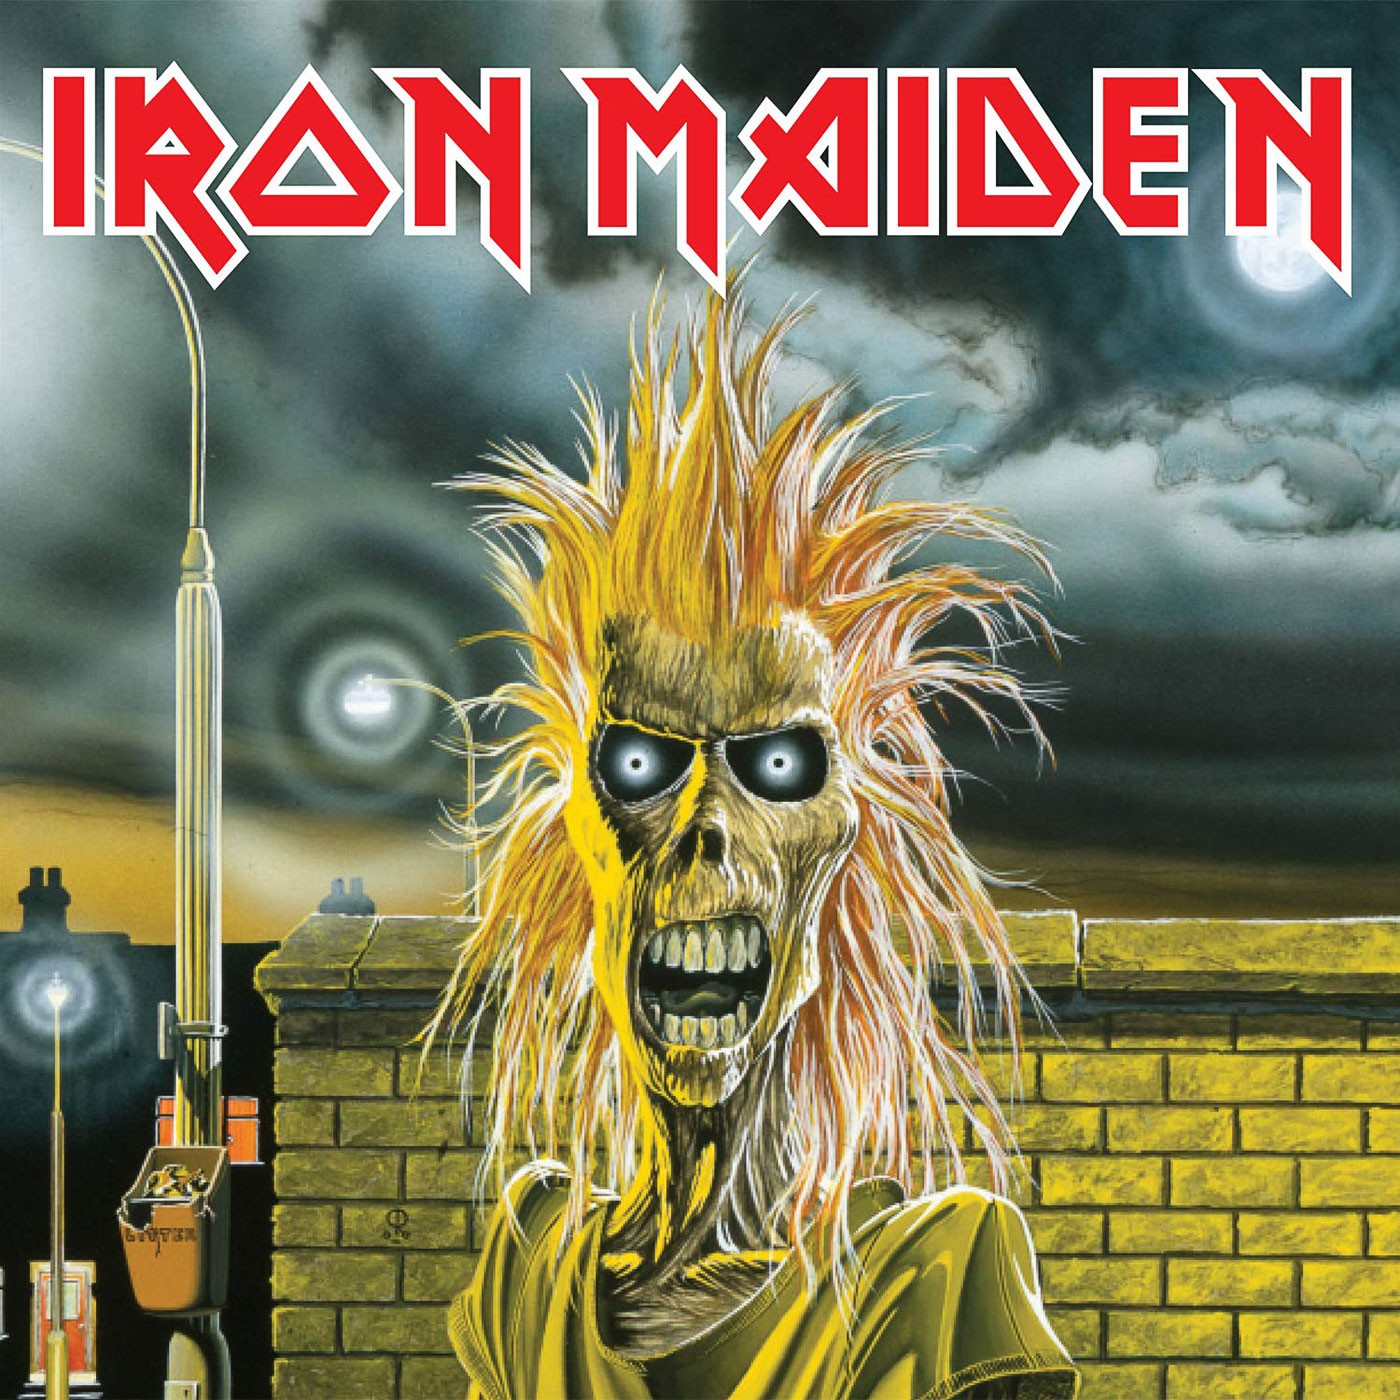 469 Iron Maiden – Iron Maiden